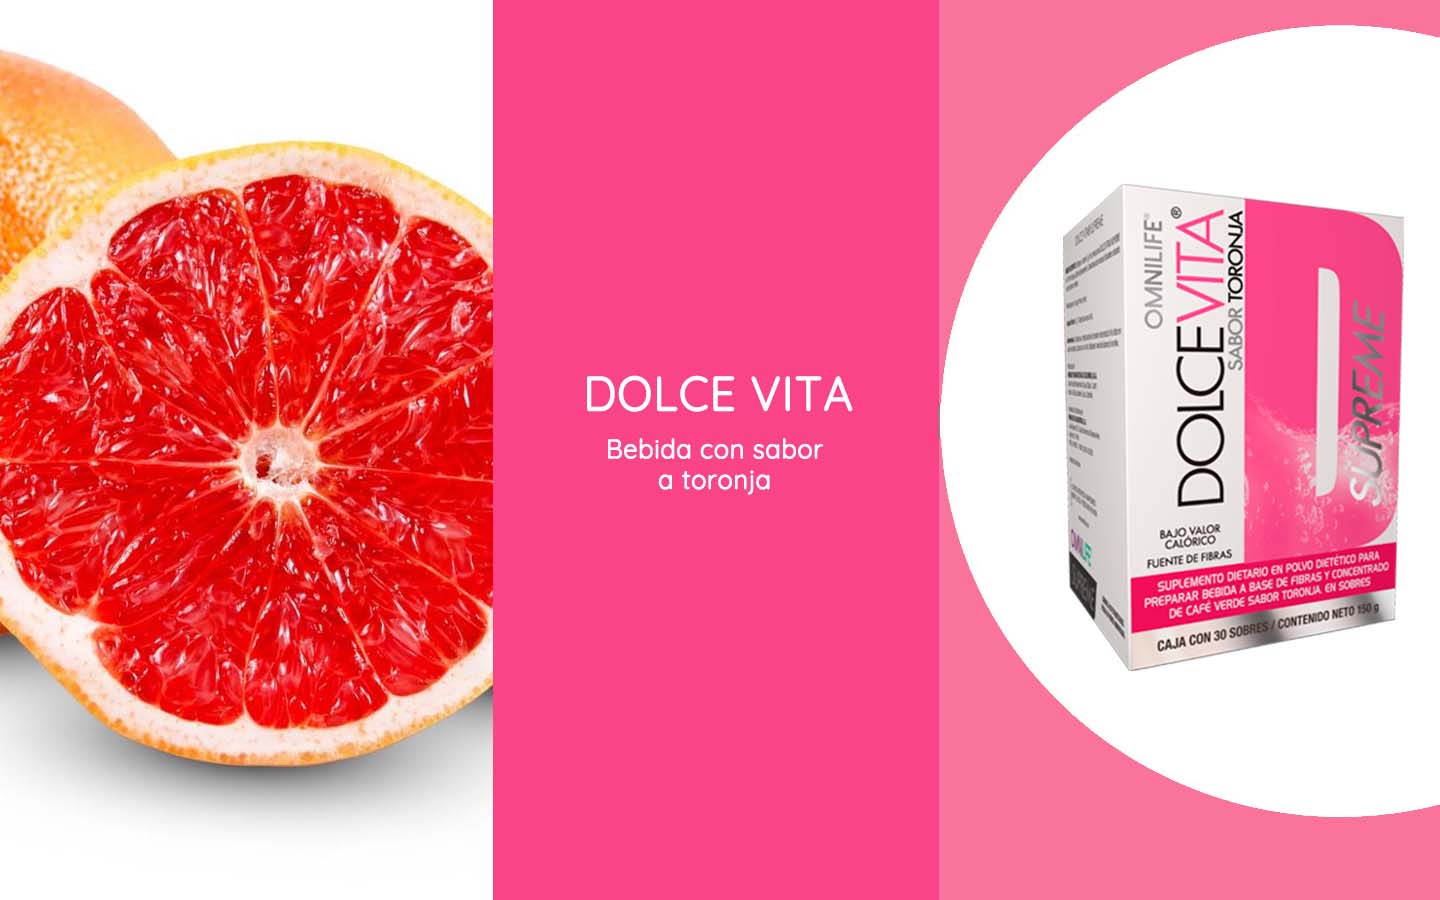 Dolce Vita Supreme es una saludable bebida con sabor a toronja